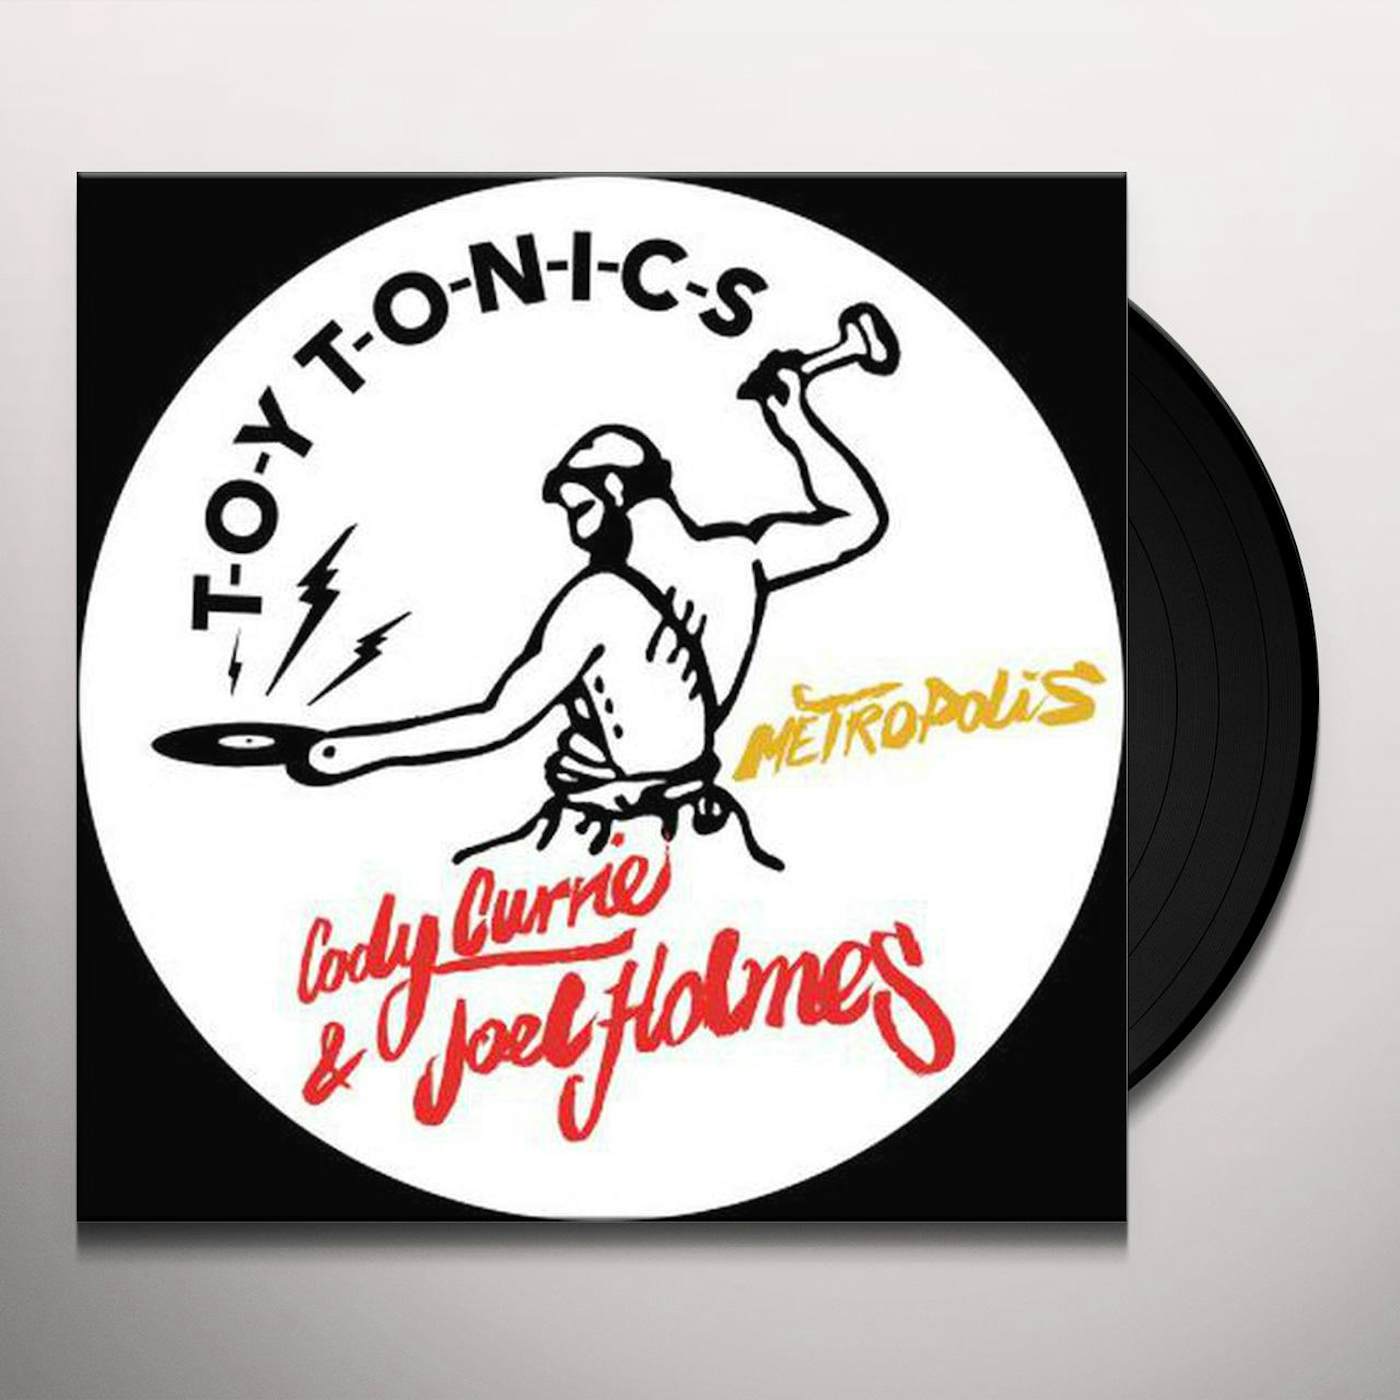 Cody Currie & Joel Holmes METROPOLIS Vinyl Record